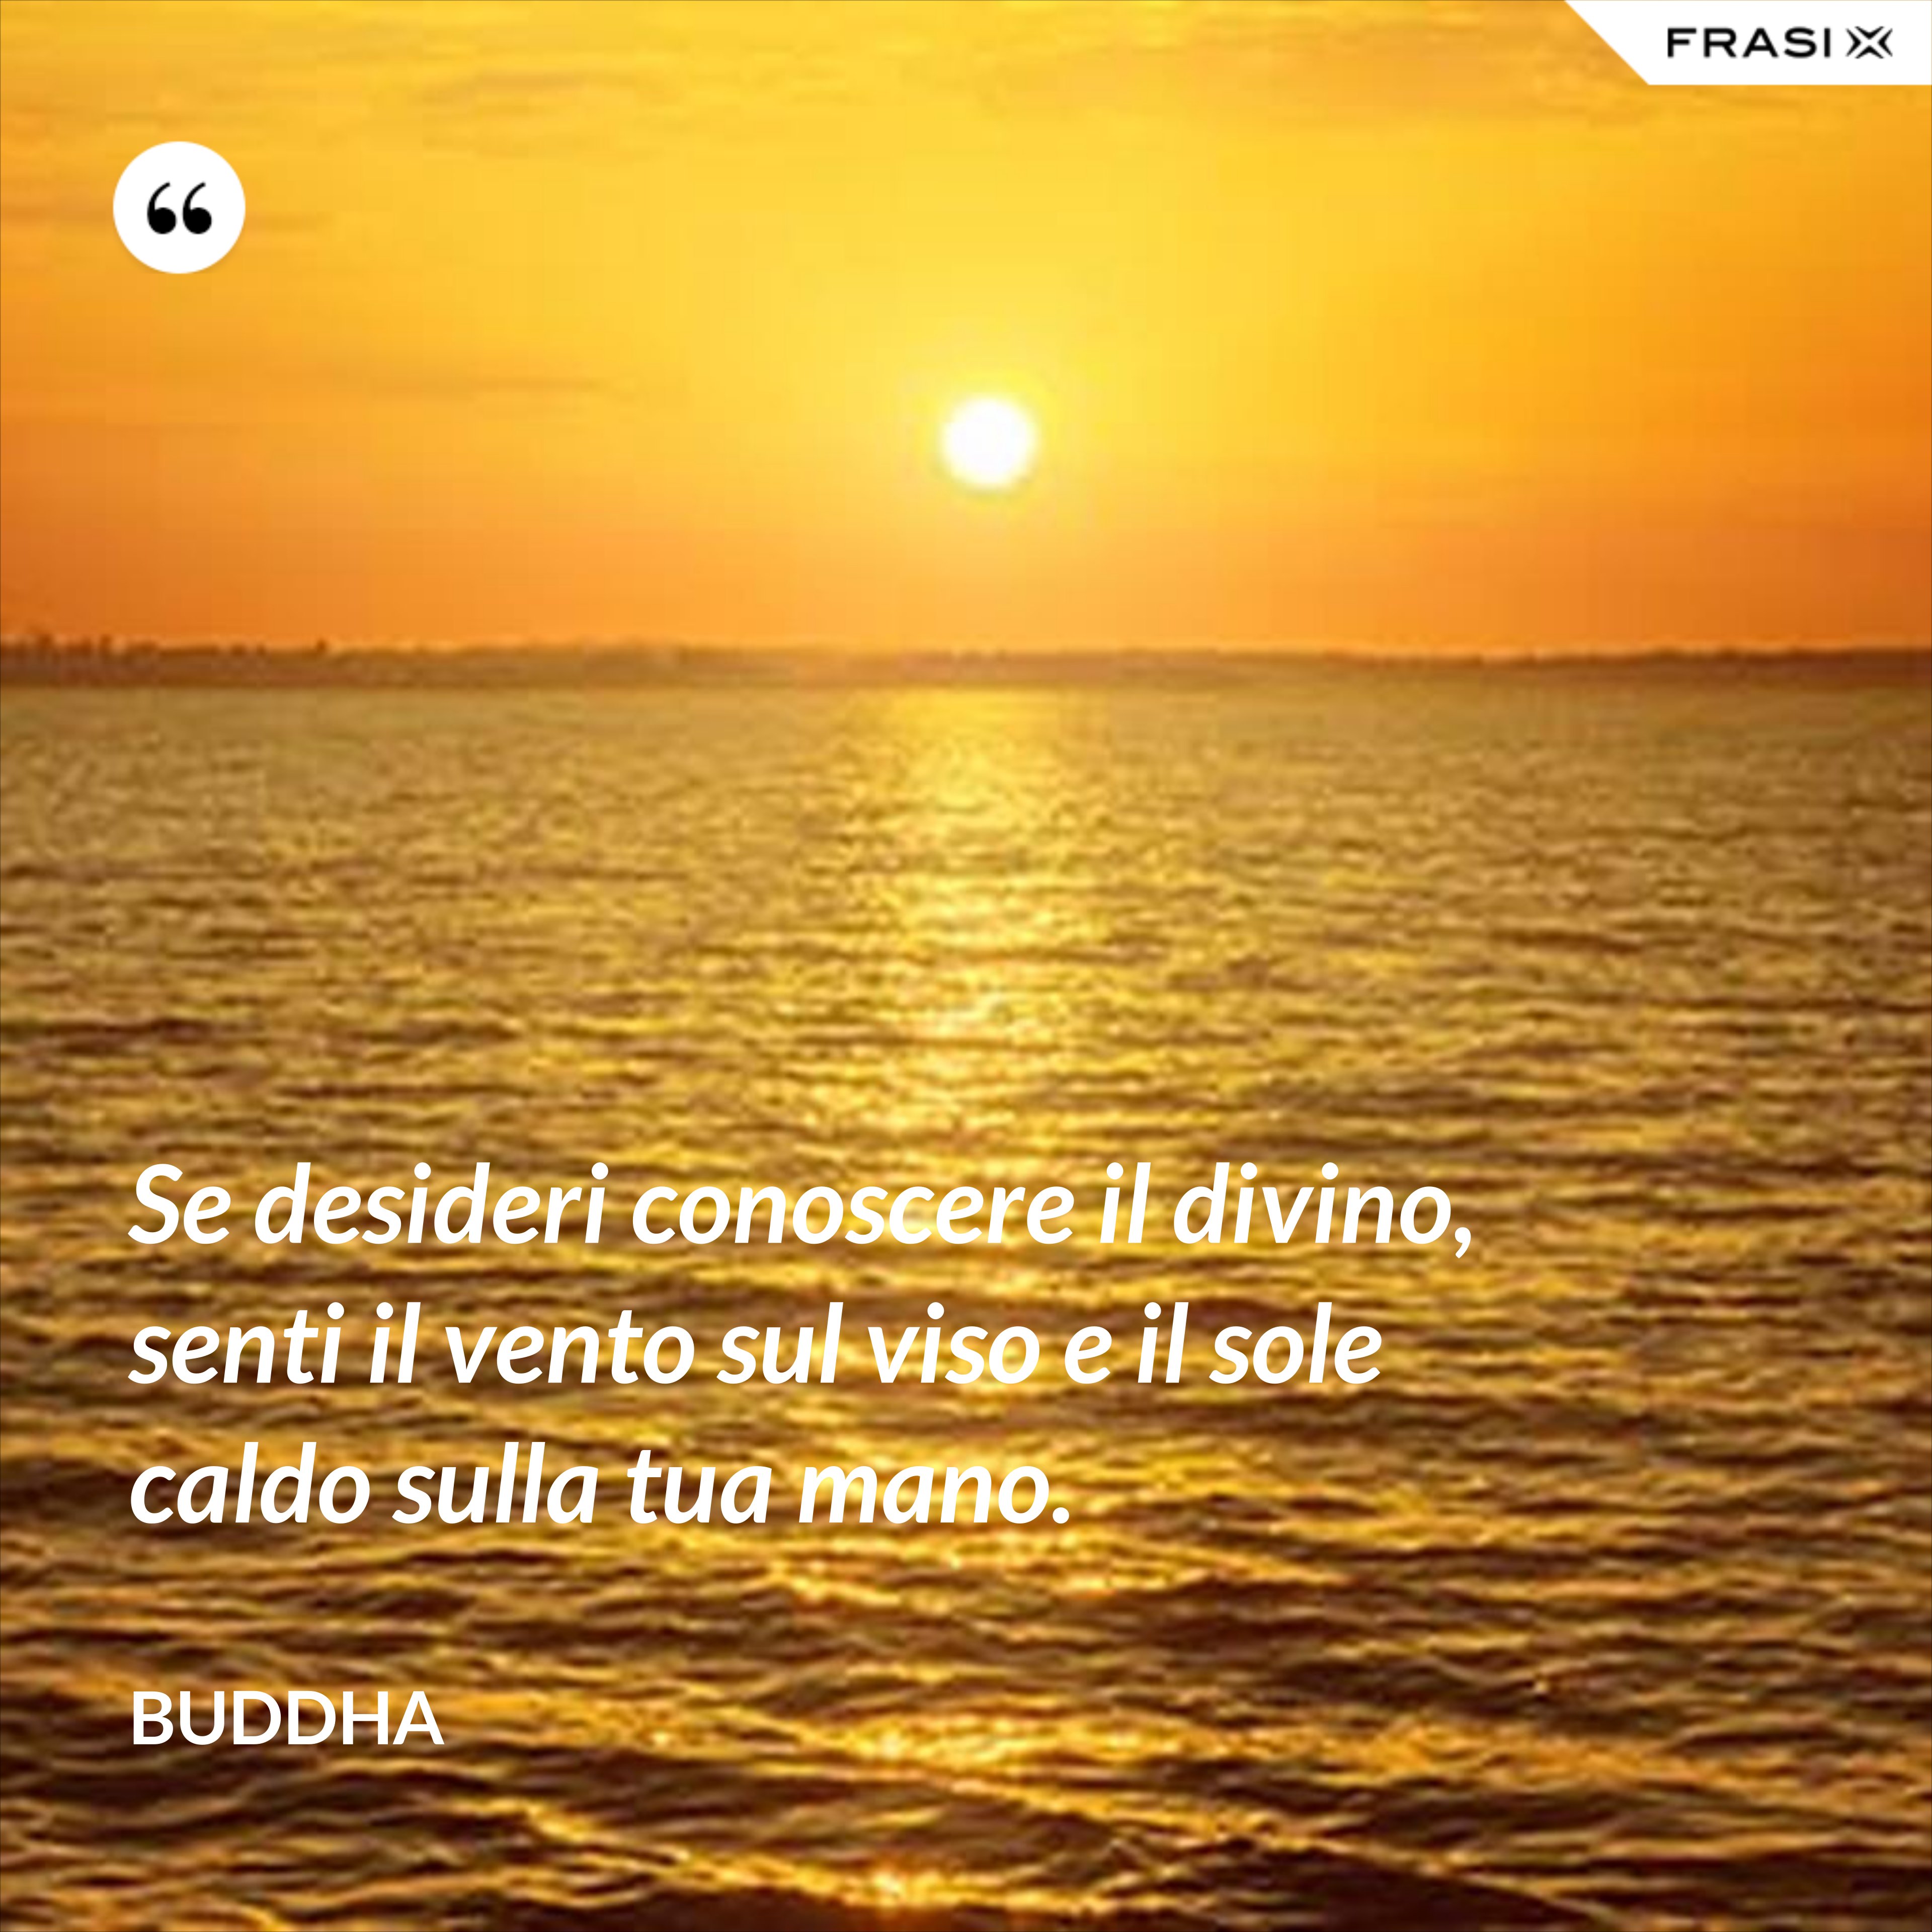 Se desideri conoscere il divino, senti il vento sul viso e il sole caldo sulla tua mano. - Buddha